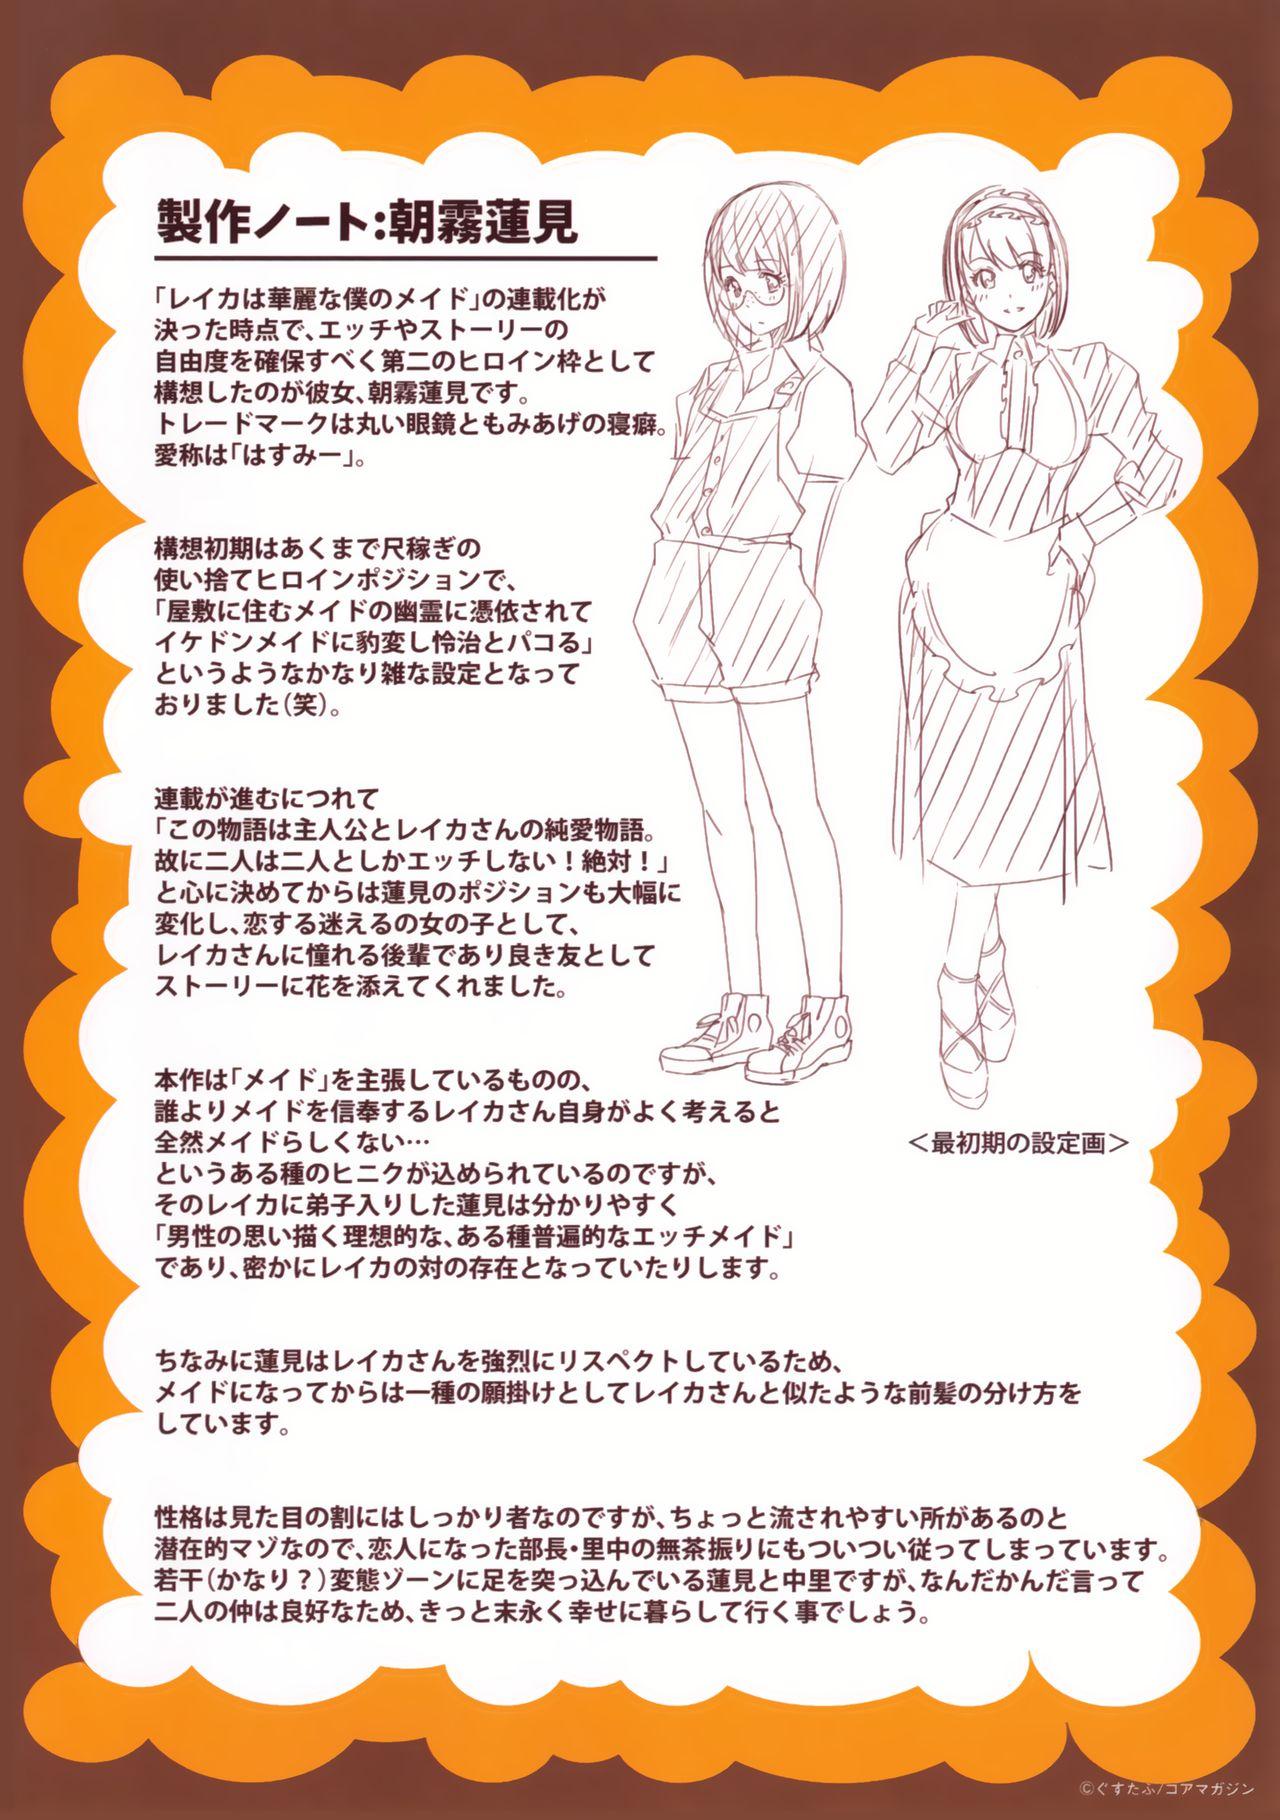 Reika wa Karei na Boku no Maid Toranoana Kounyuu Tokuten 8P Shousasshi | Reika, My Spendid Maid - 8 Page Special 7